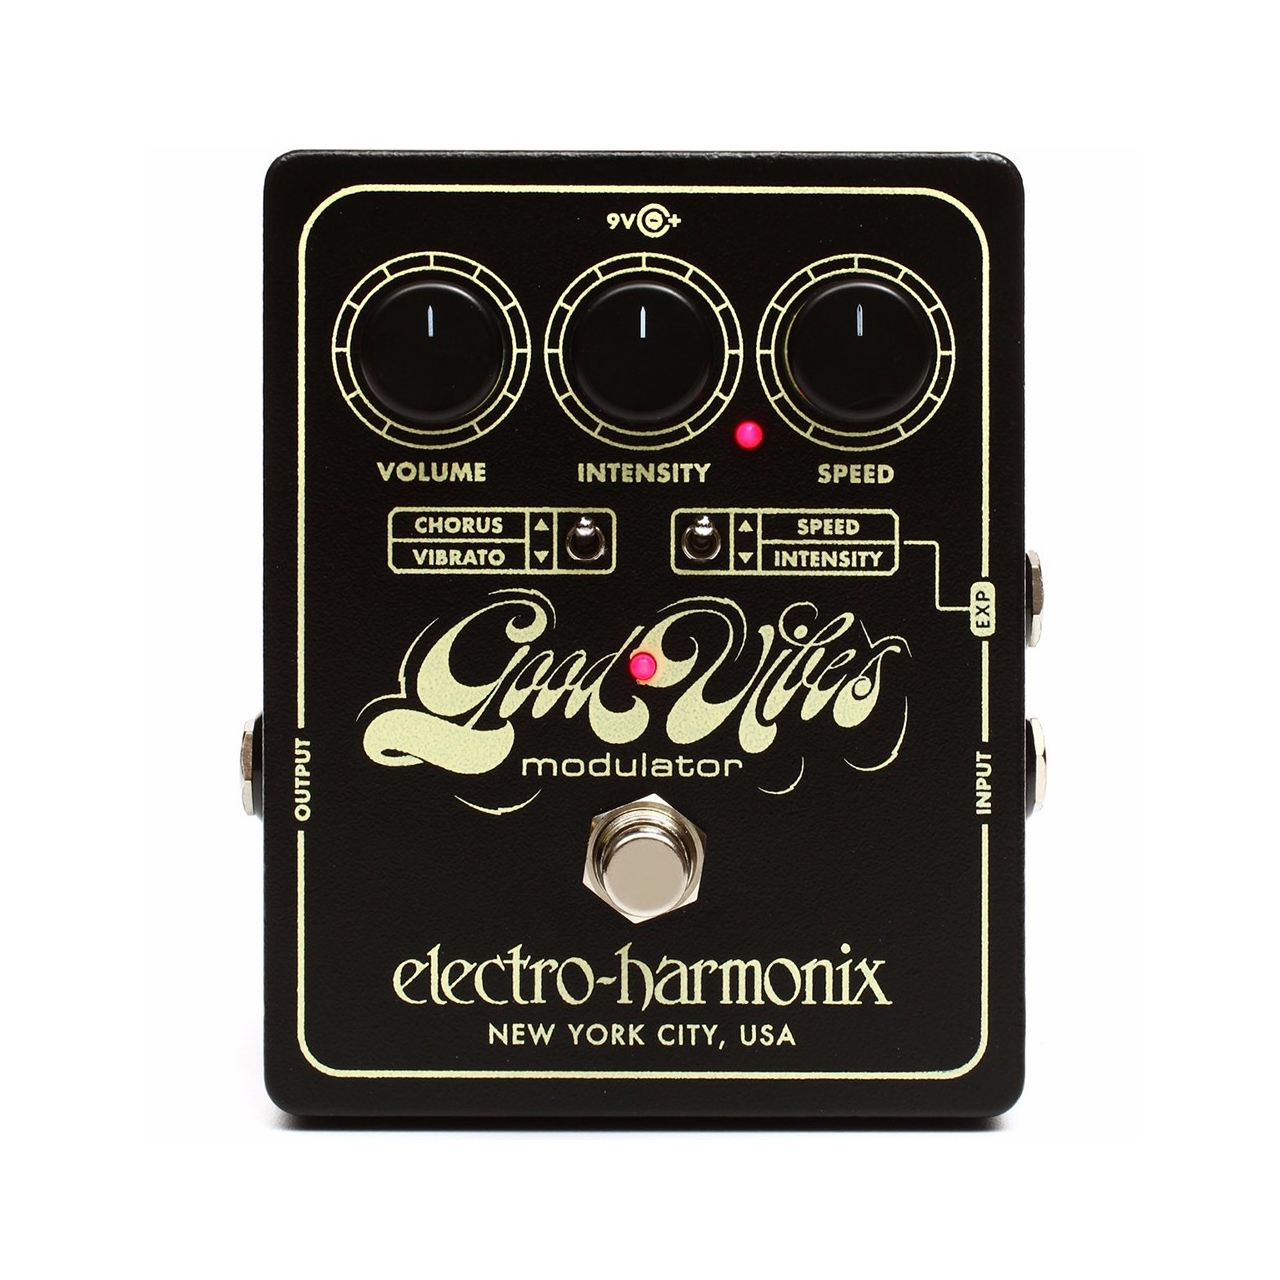 Electro-Harmonix Good Vibes